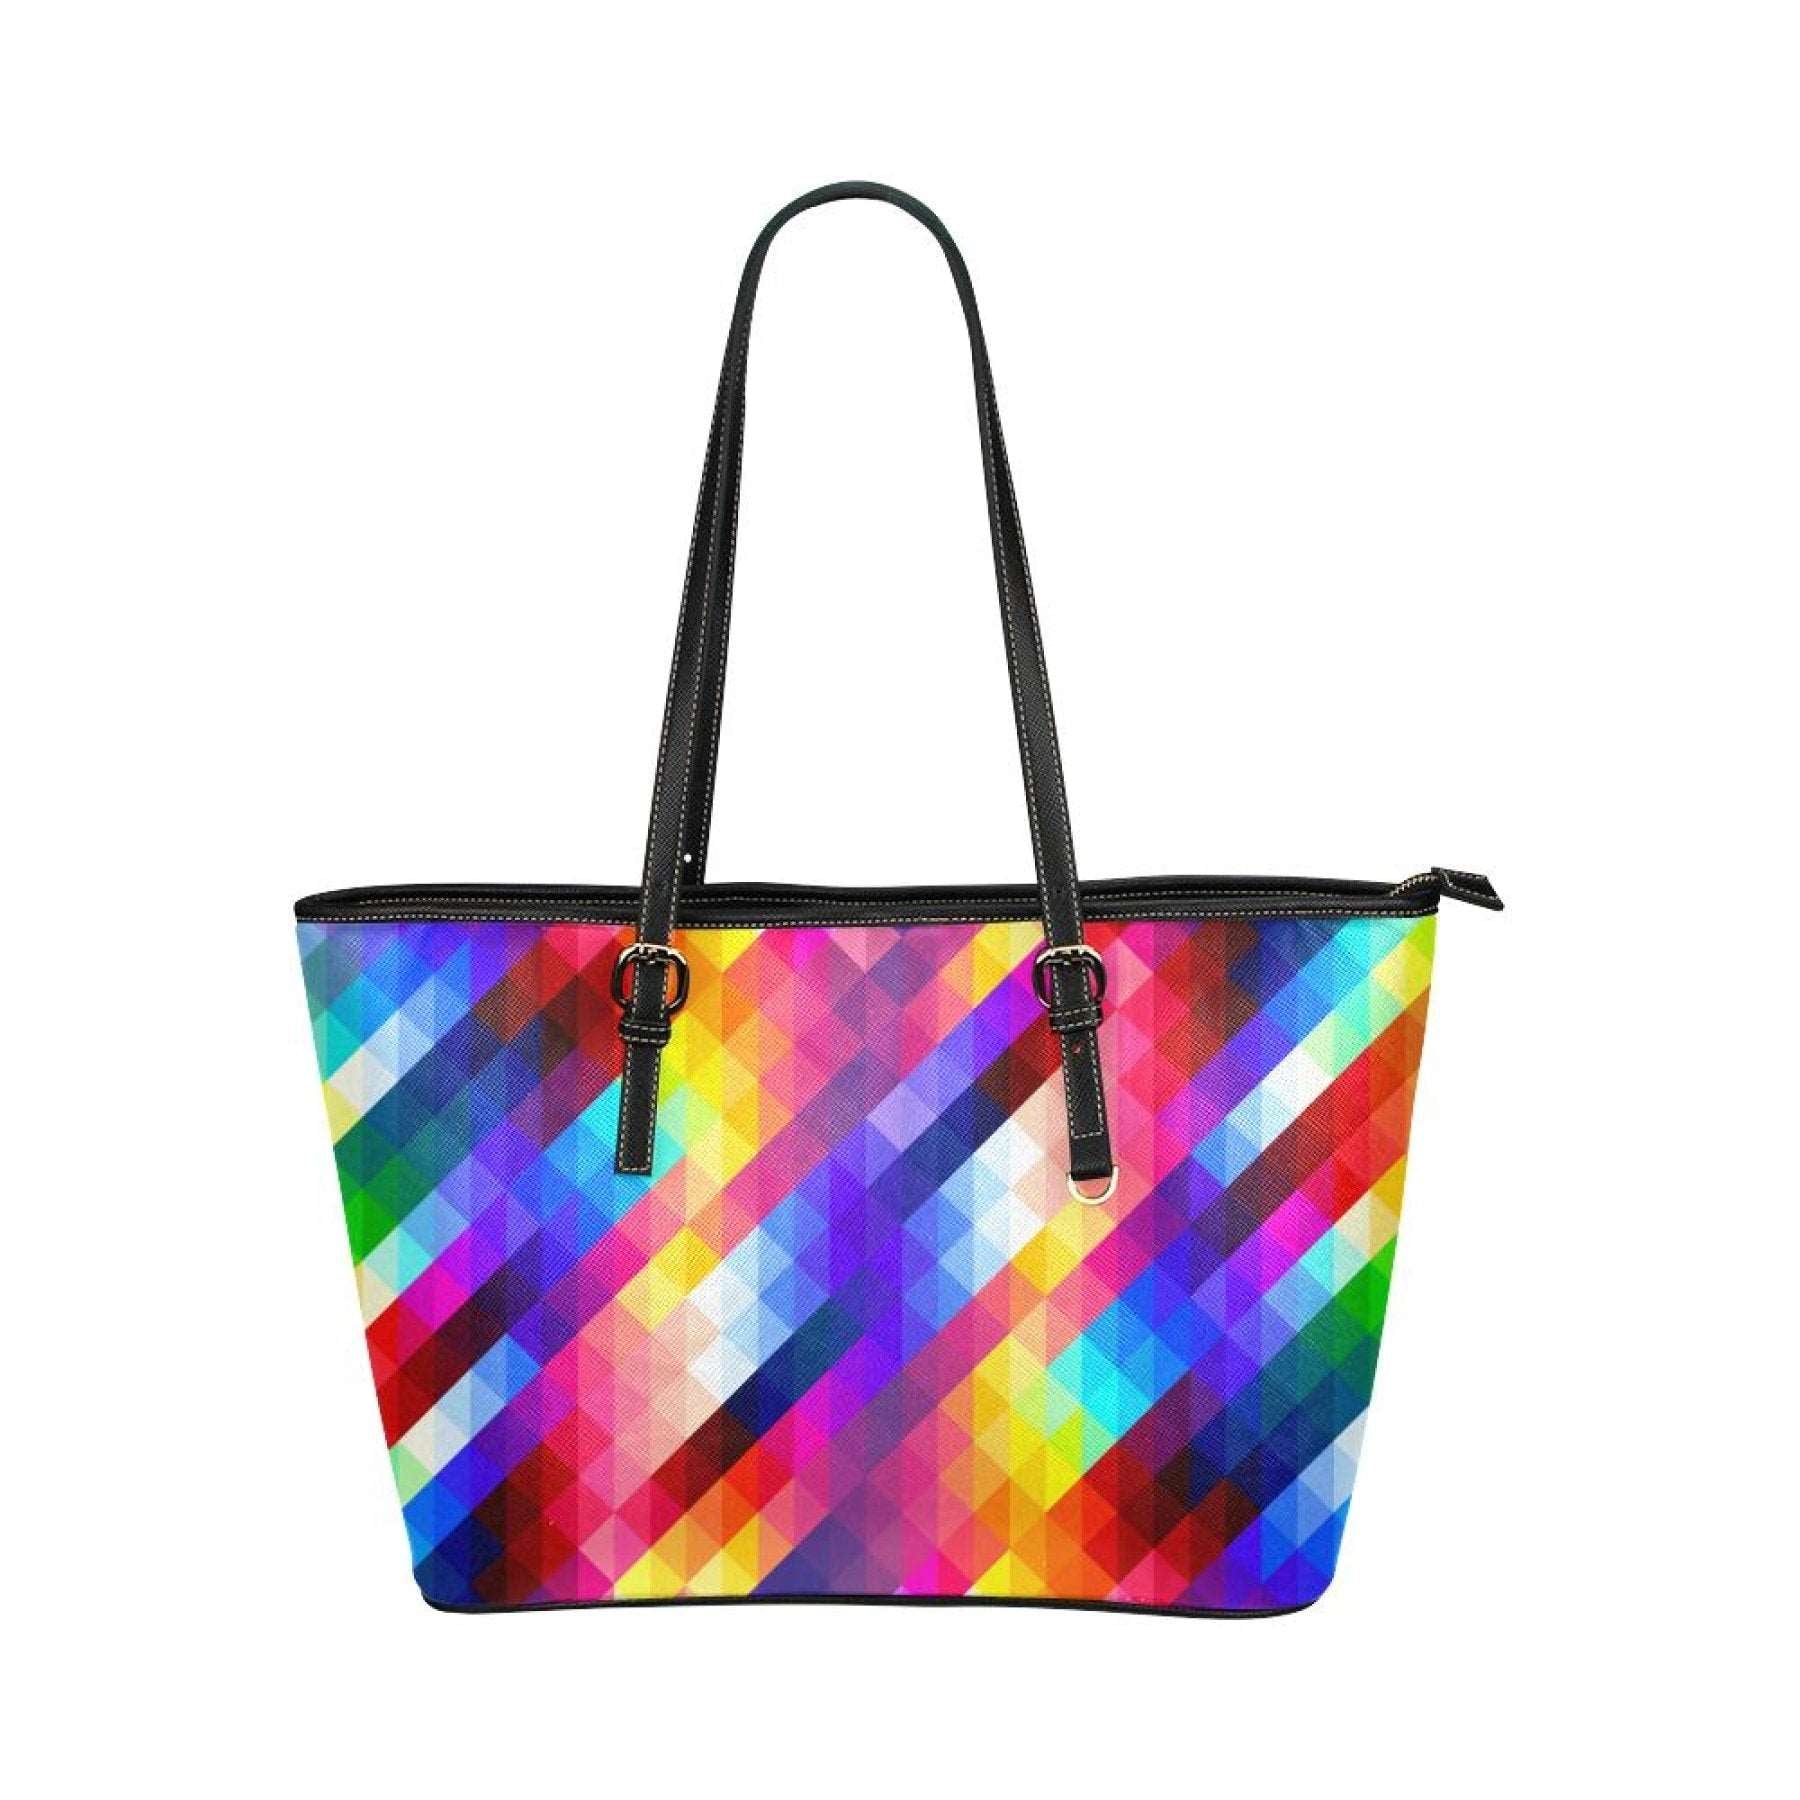 Women's Leather Tote Bag, Multicolor Grid Double Handle Handbag Grey Coco